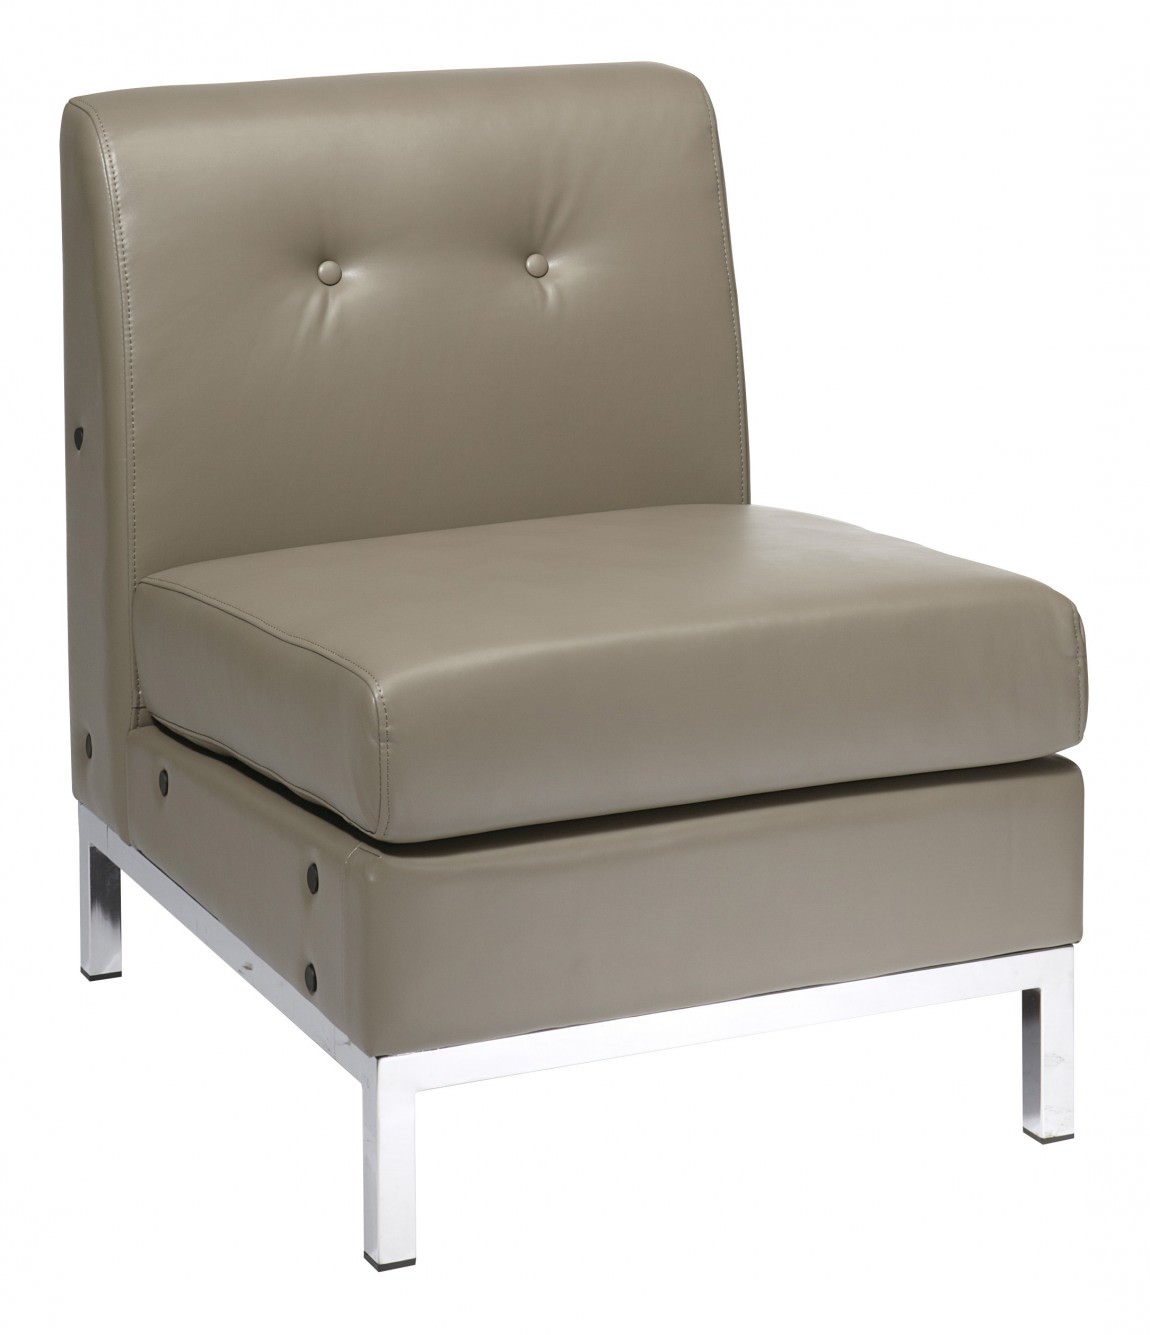 Club Style Armless Chair